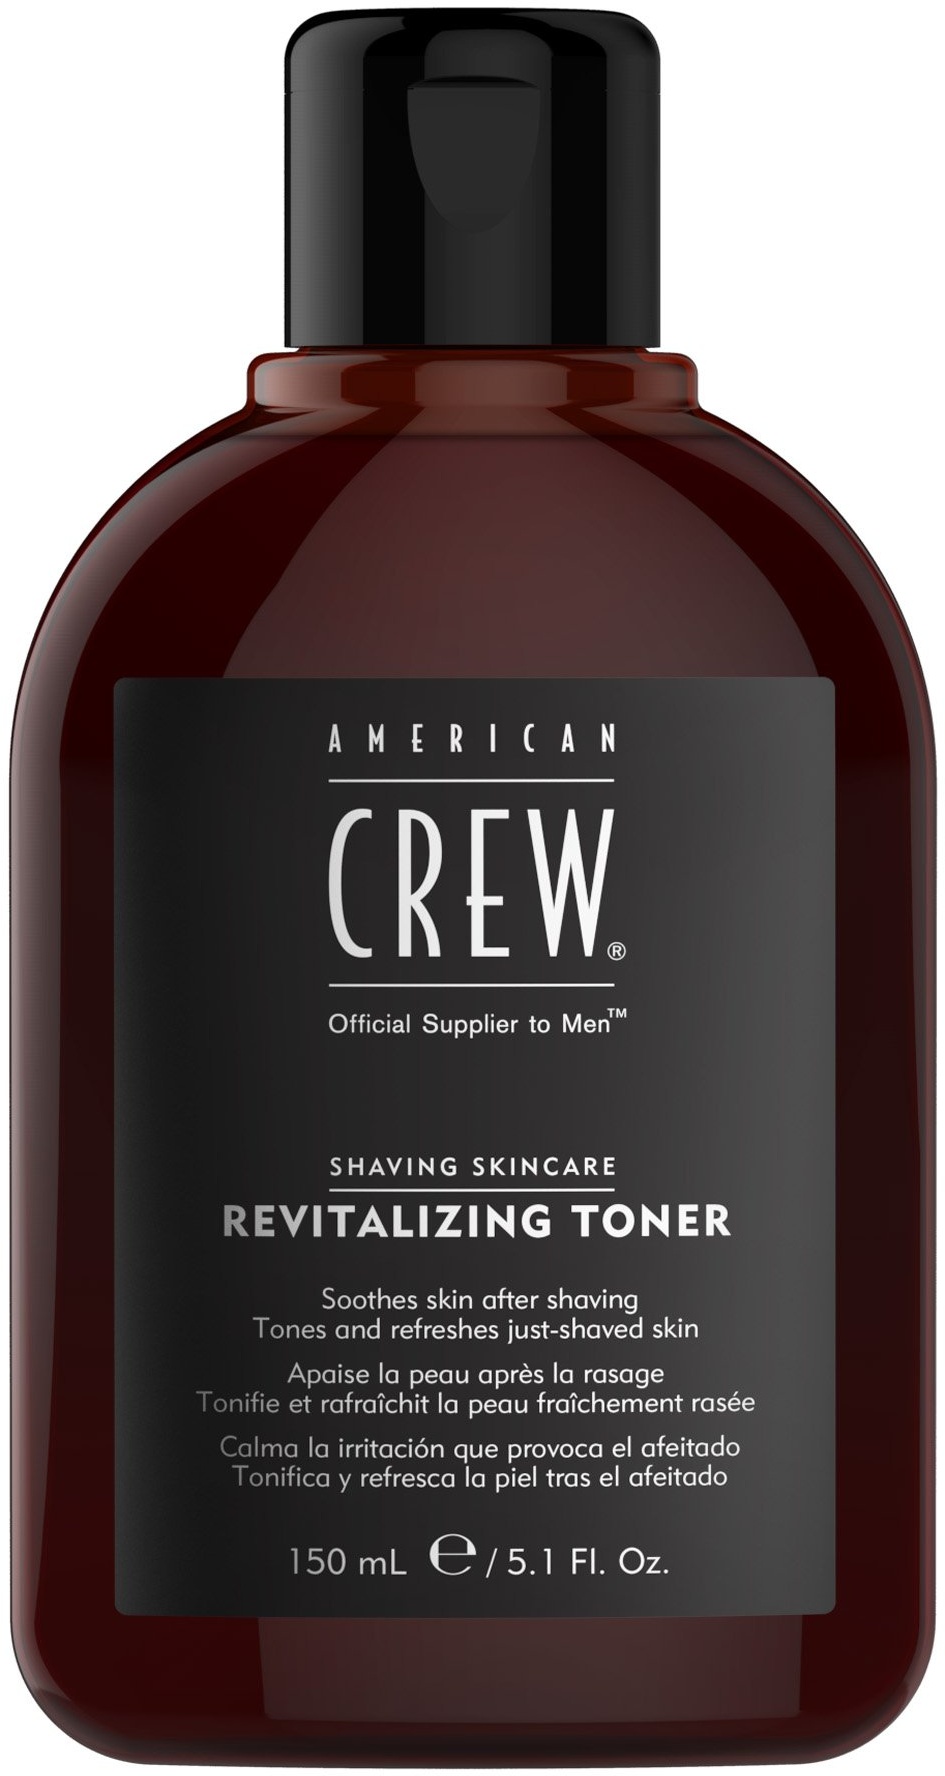 AMERICAN CREW – Revitalizing Toner, 150 ml, Tonikum revitalisiert die Haut nach der Rasur, After Shave mit beruhigender Wirkung, Pflegeprodukt mit enzymatischem Exfoliant